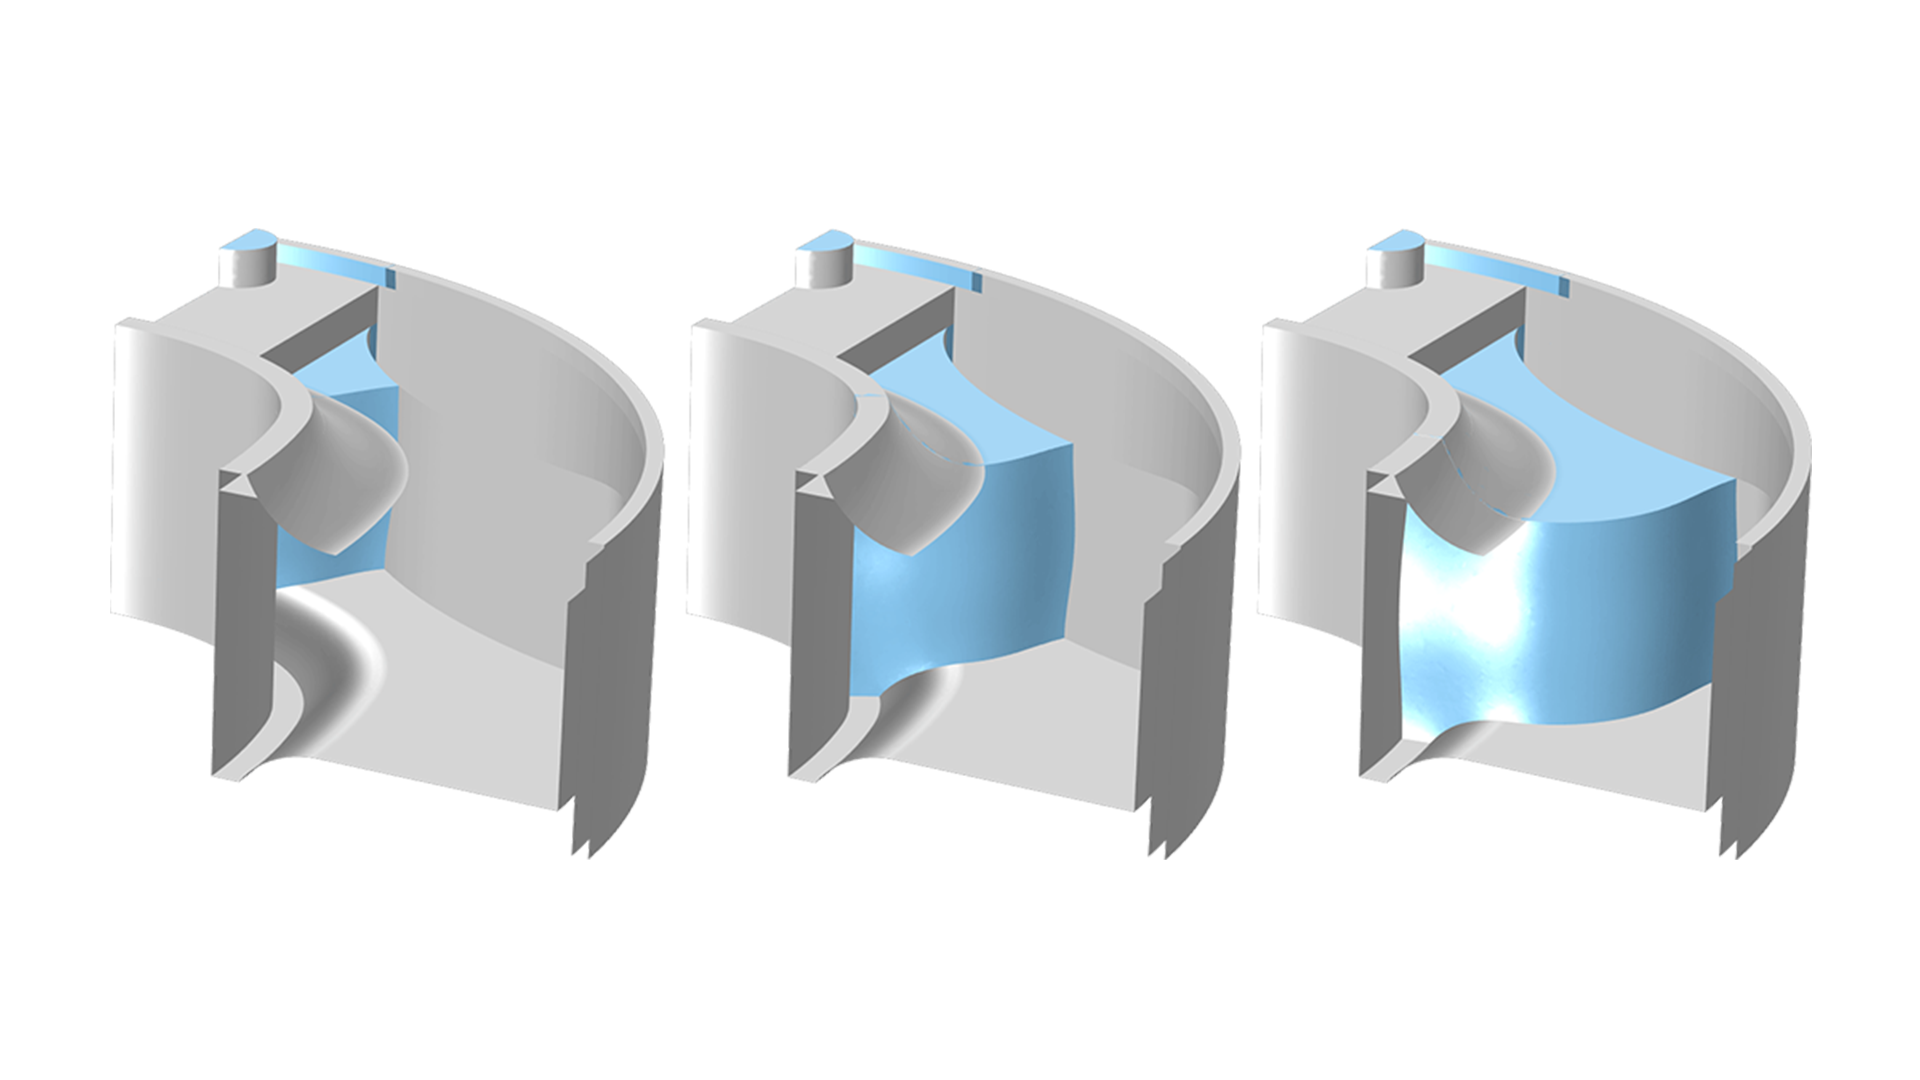 Показаны три момента времени в процессе заполнения модели литьевой формы (показана серым цветом) 
 расплавом резины (голубой цвет).